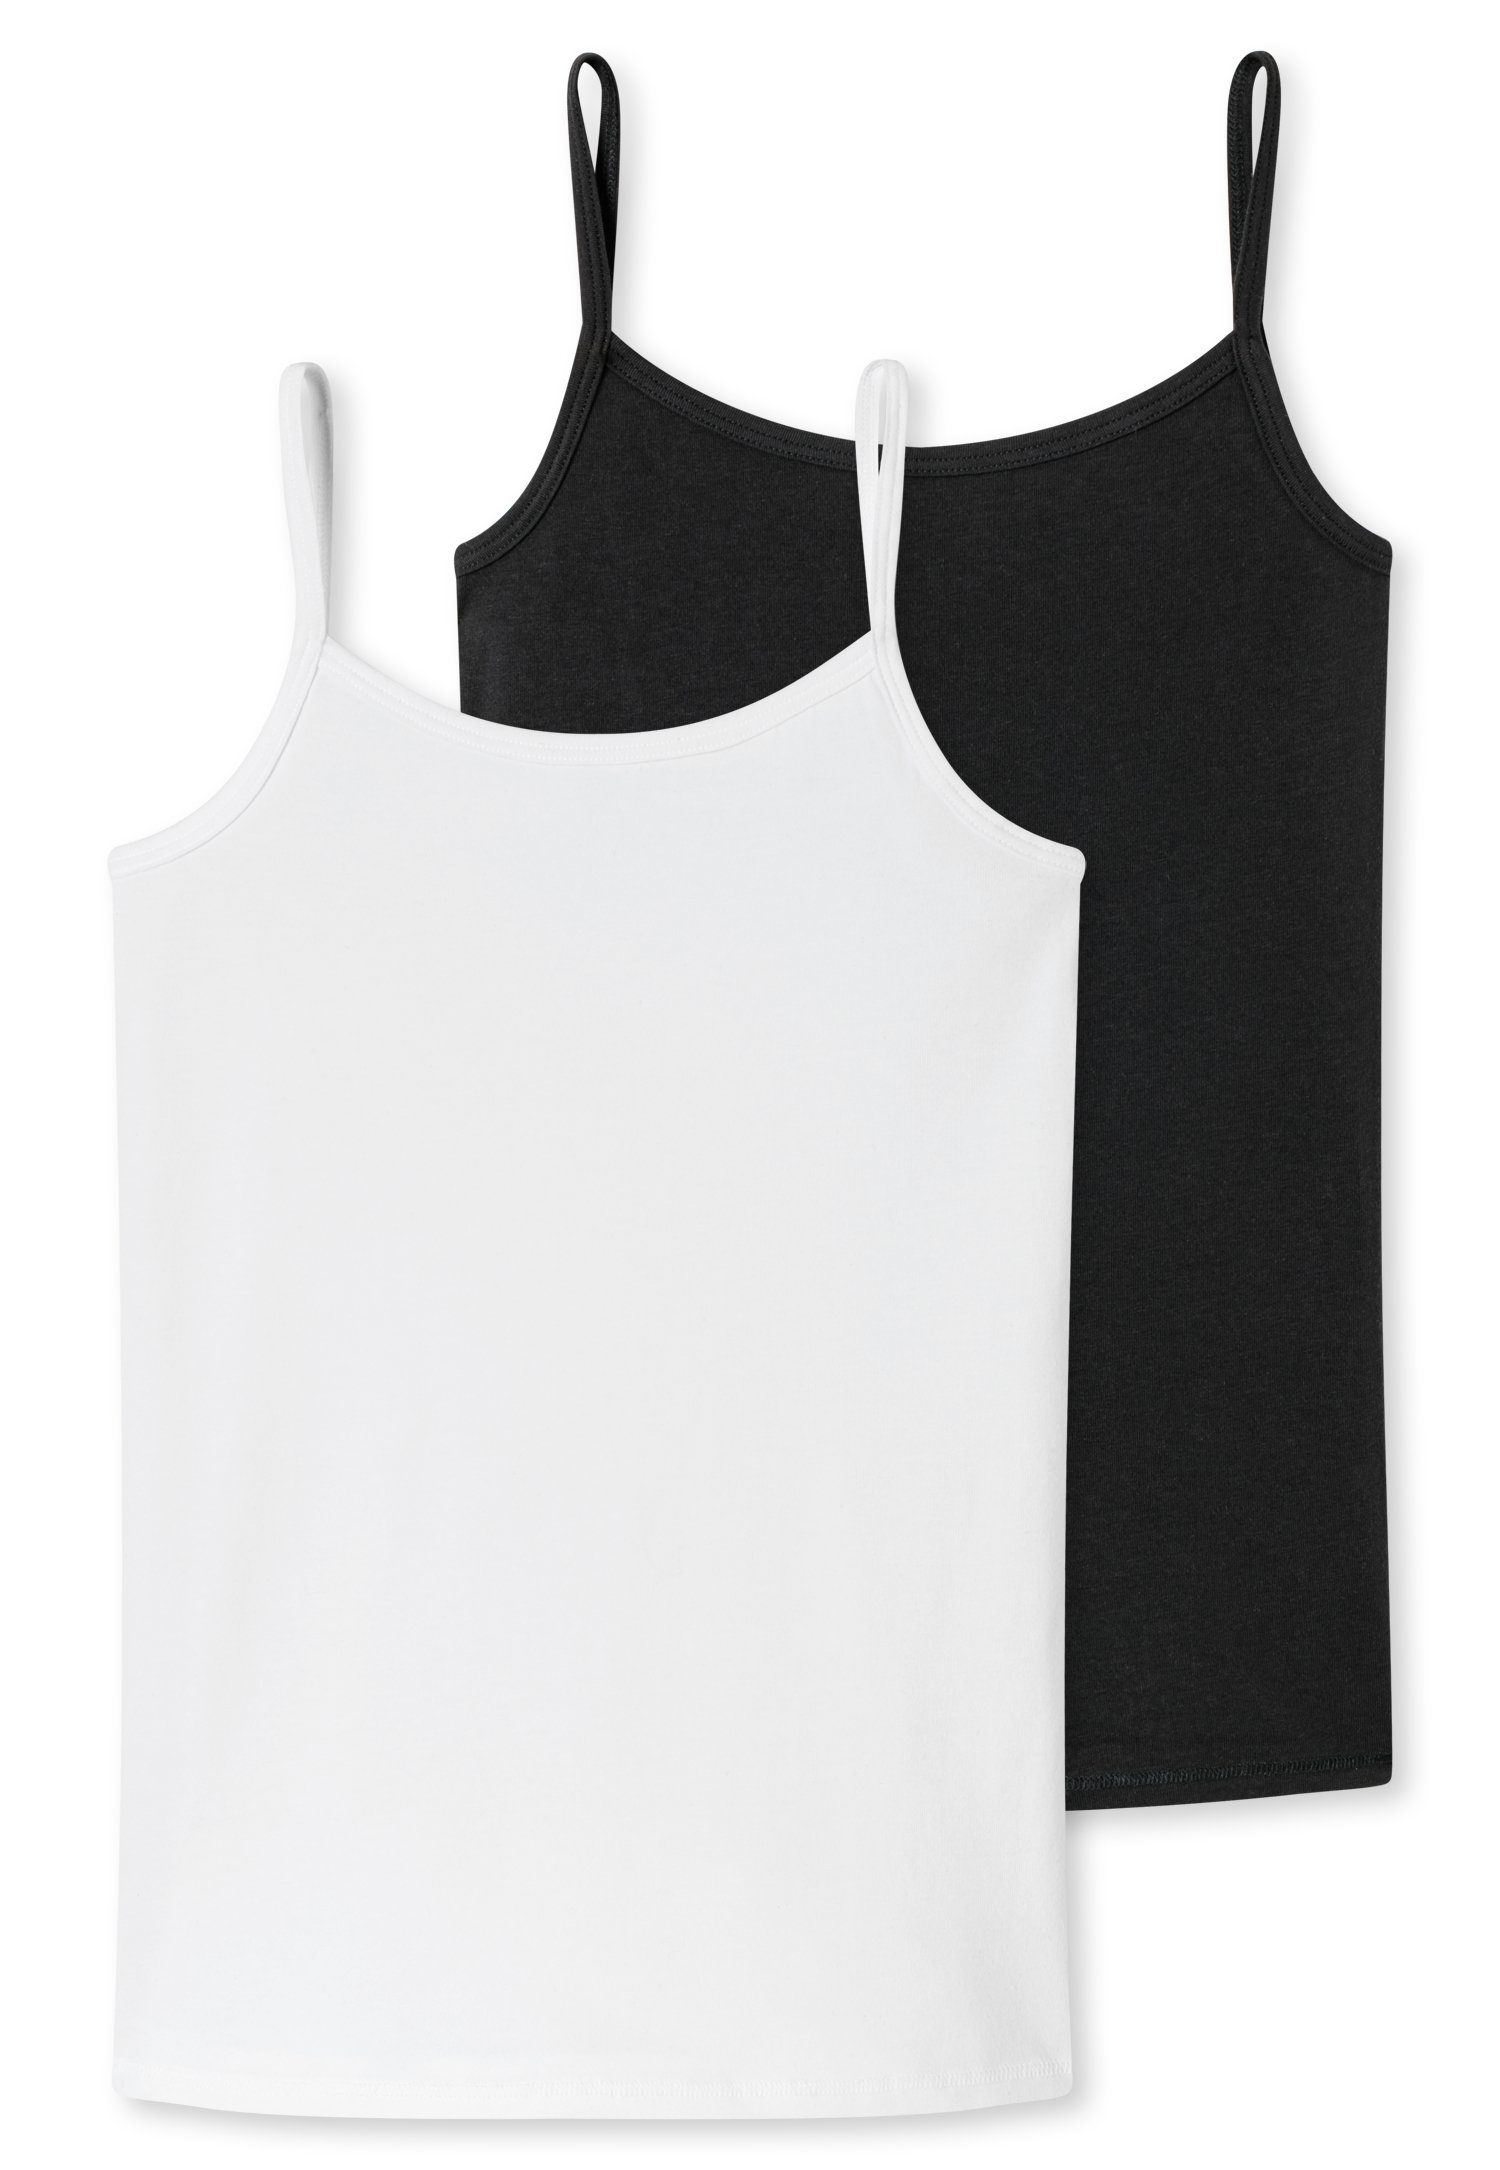 Unterhemd mit Trägern Schiesser schwarz/weiß (2er-Pack) schmalen